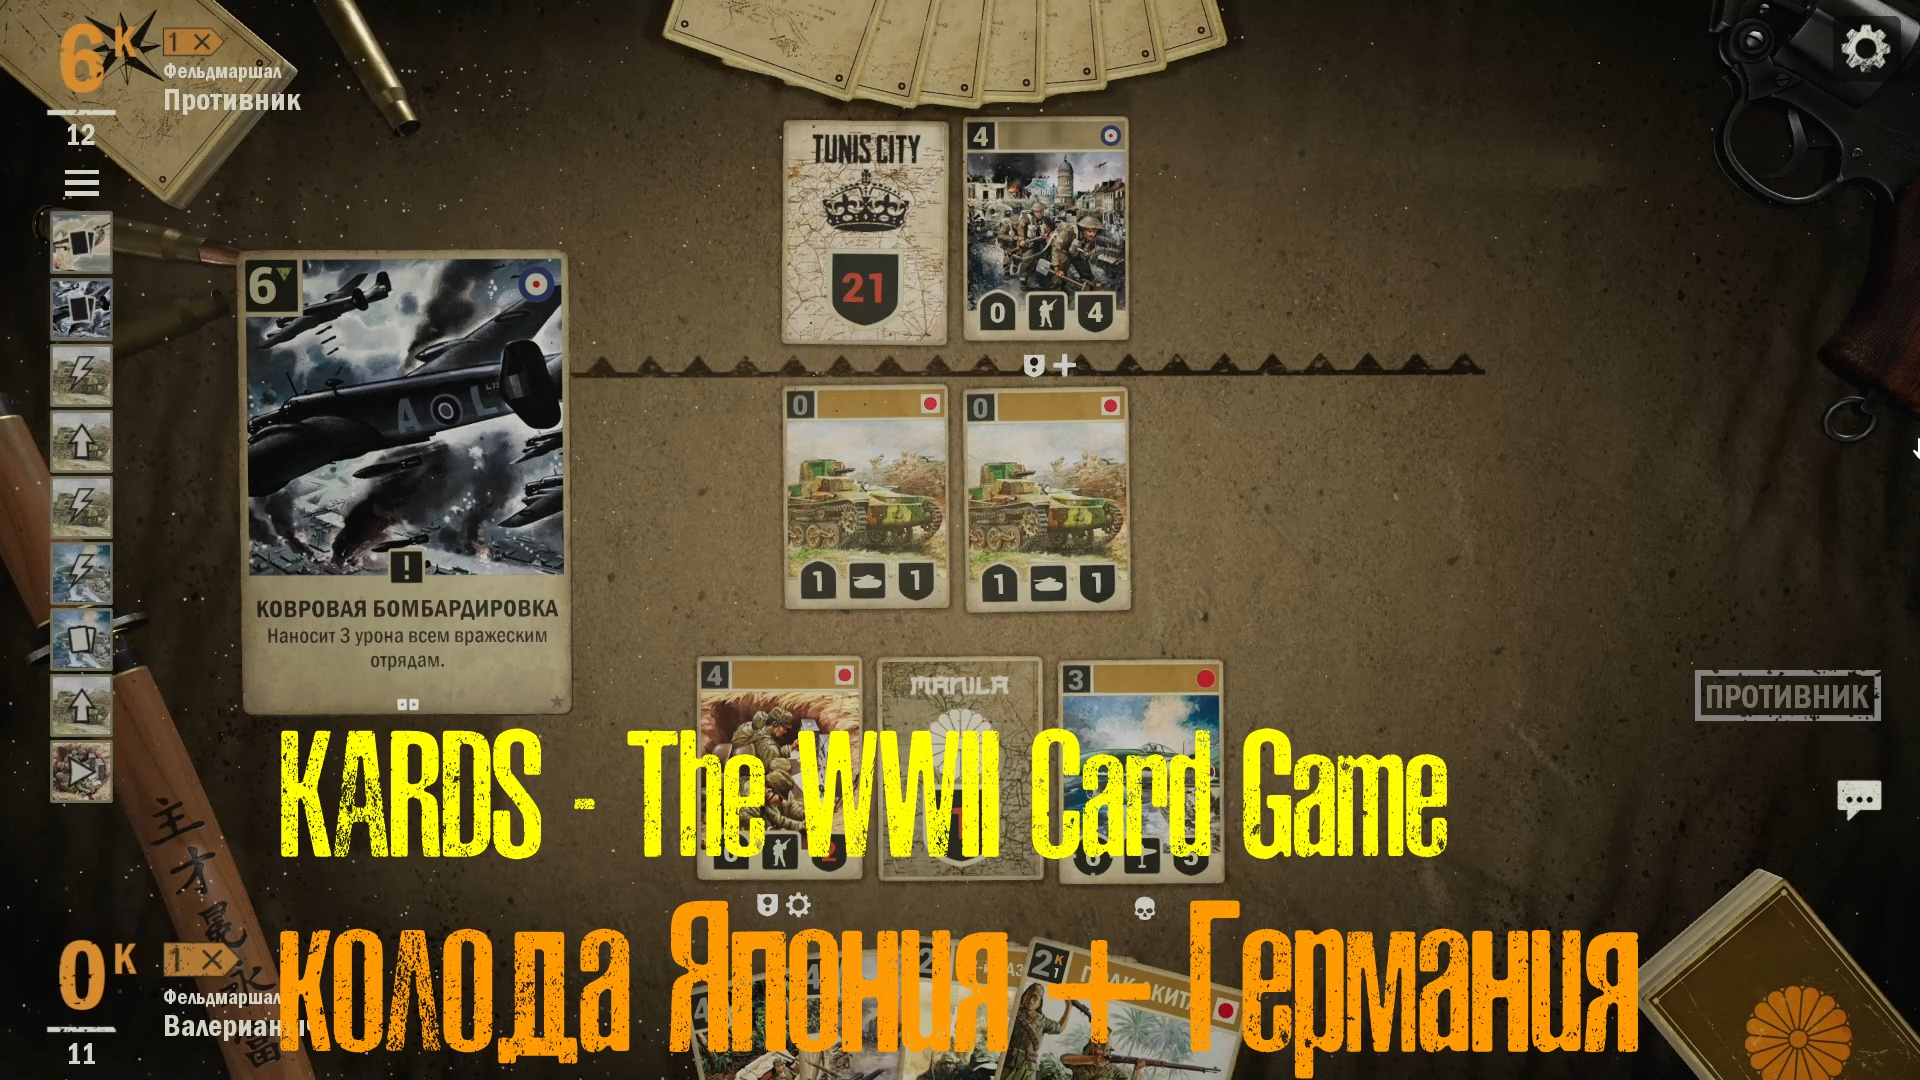 🔴KARDS.The WWII Card Game▶Япония(Германия) VS Англия(Америка)